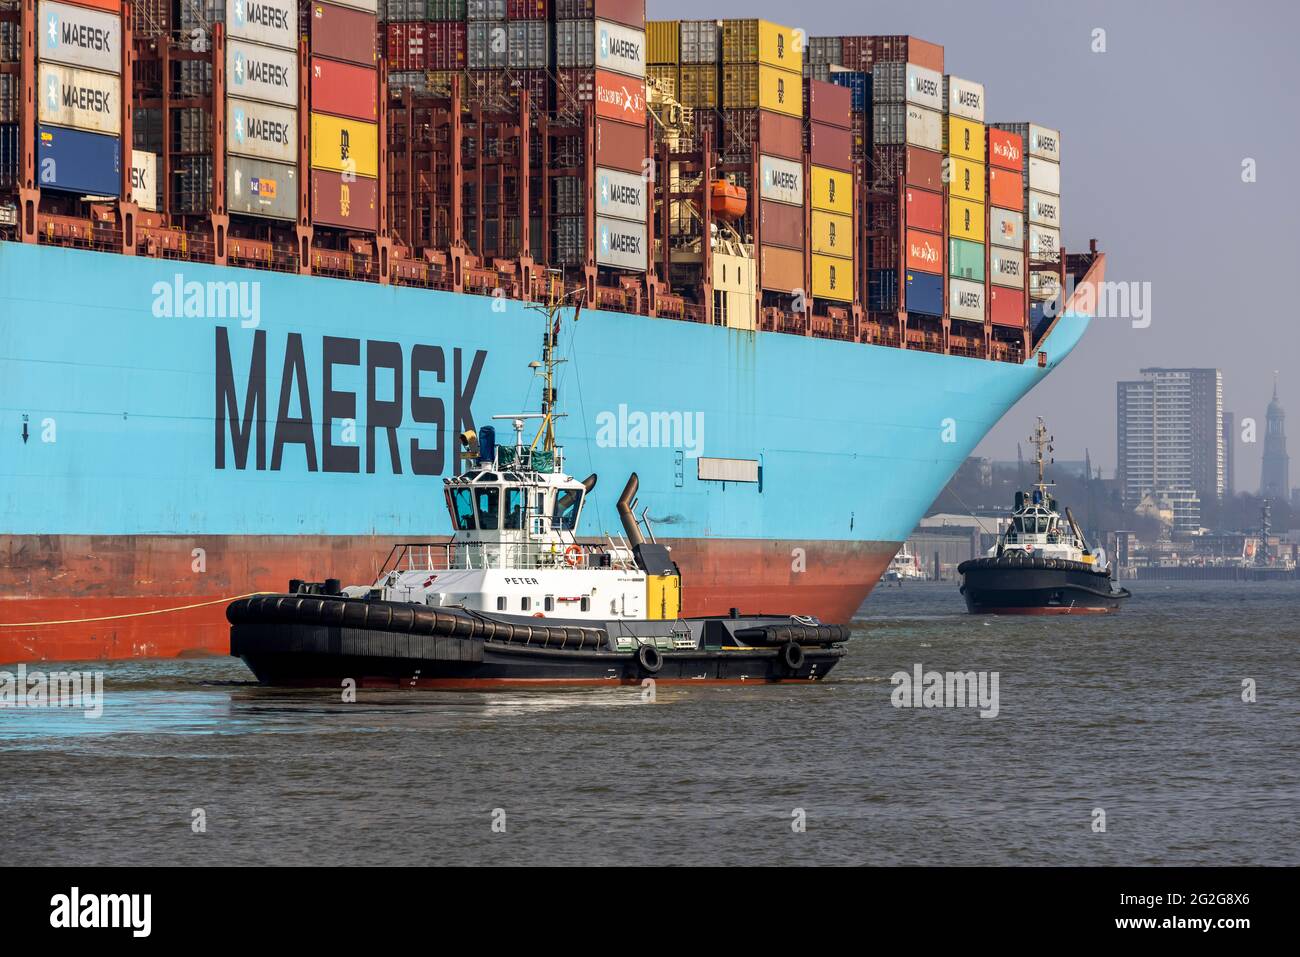 La nave-container MARGRETHE MAERSK entra, gira e traina nel porto di Amburgo Foto Stock